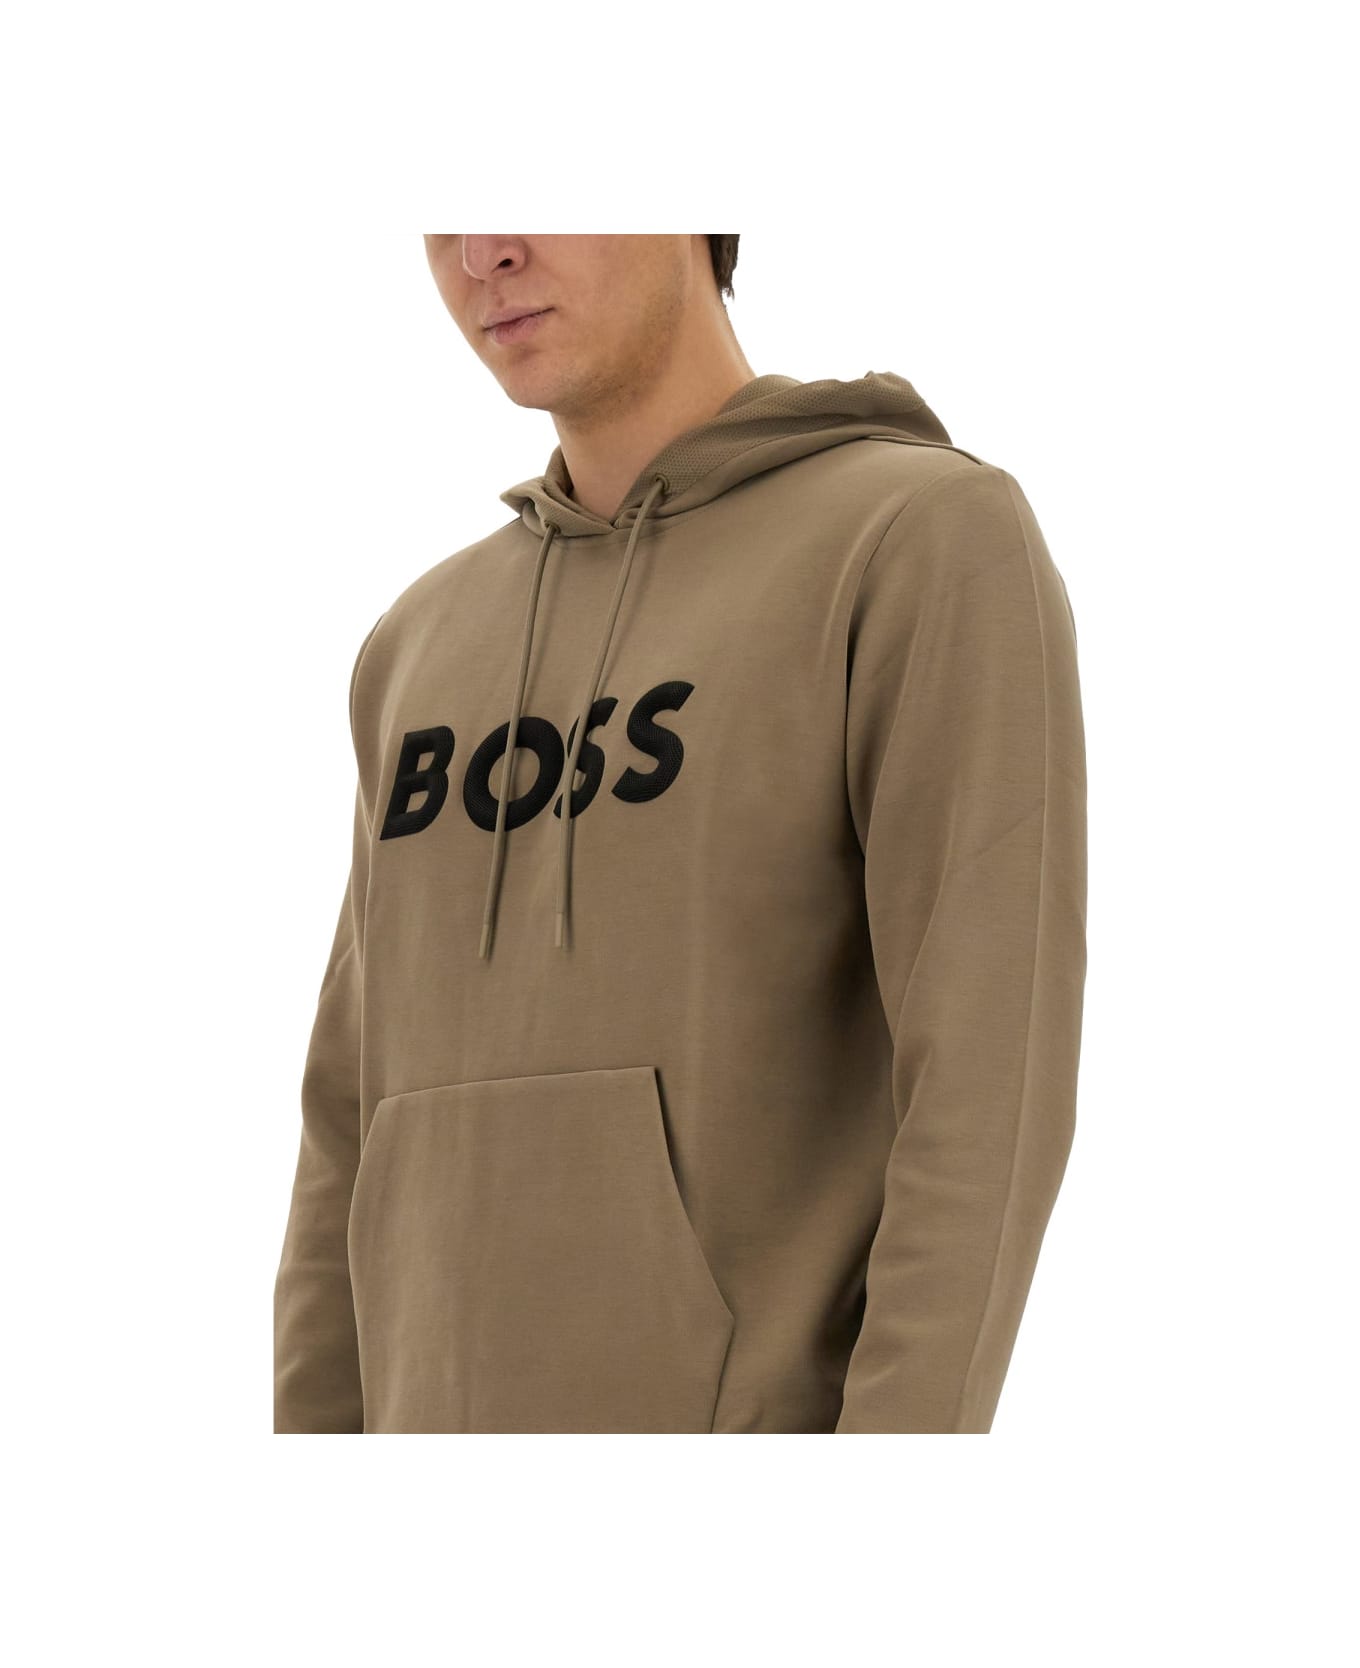 Hugo Boss Sweatshirt With Logo - BEIGE